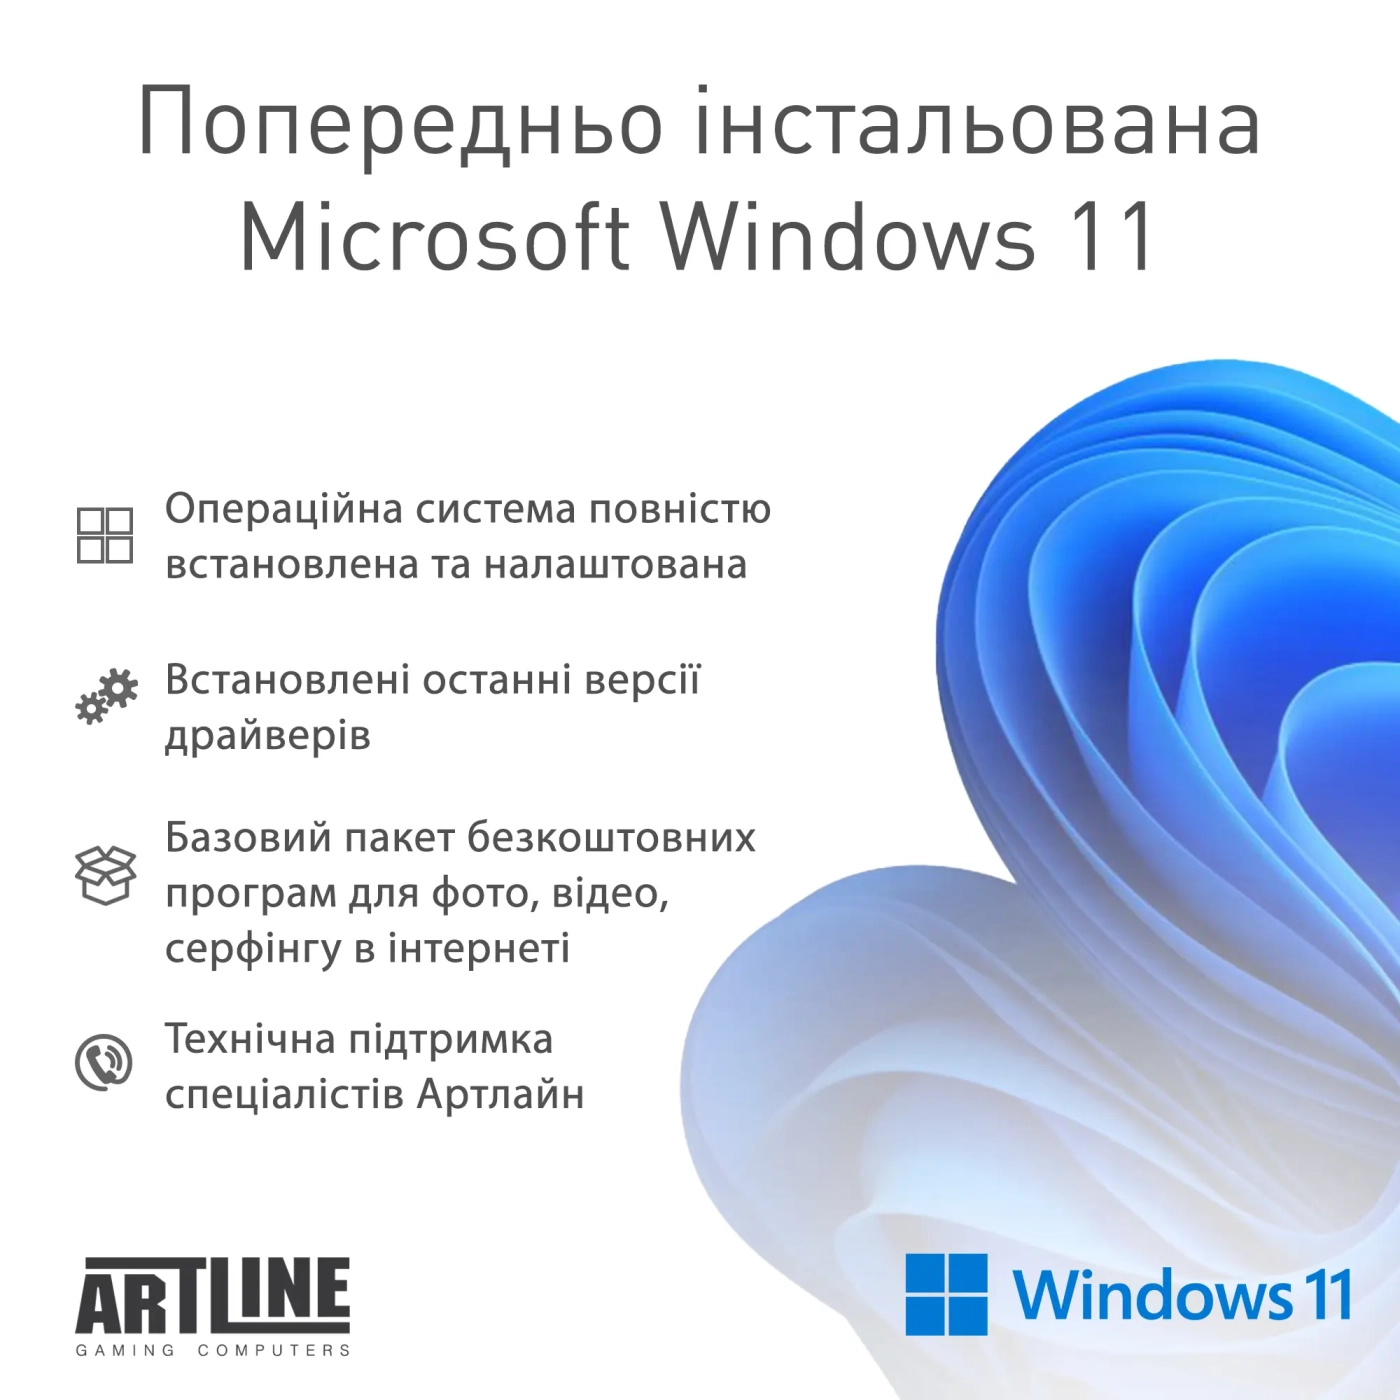 Купить Компьютер ARTLINE Gaming Y60 Windows 11 Home (Y60v06) - фото 9